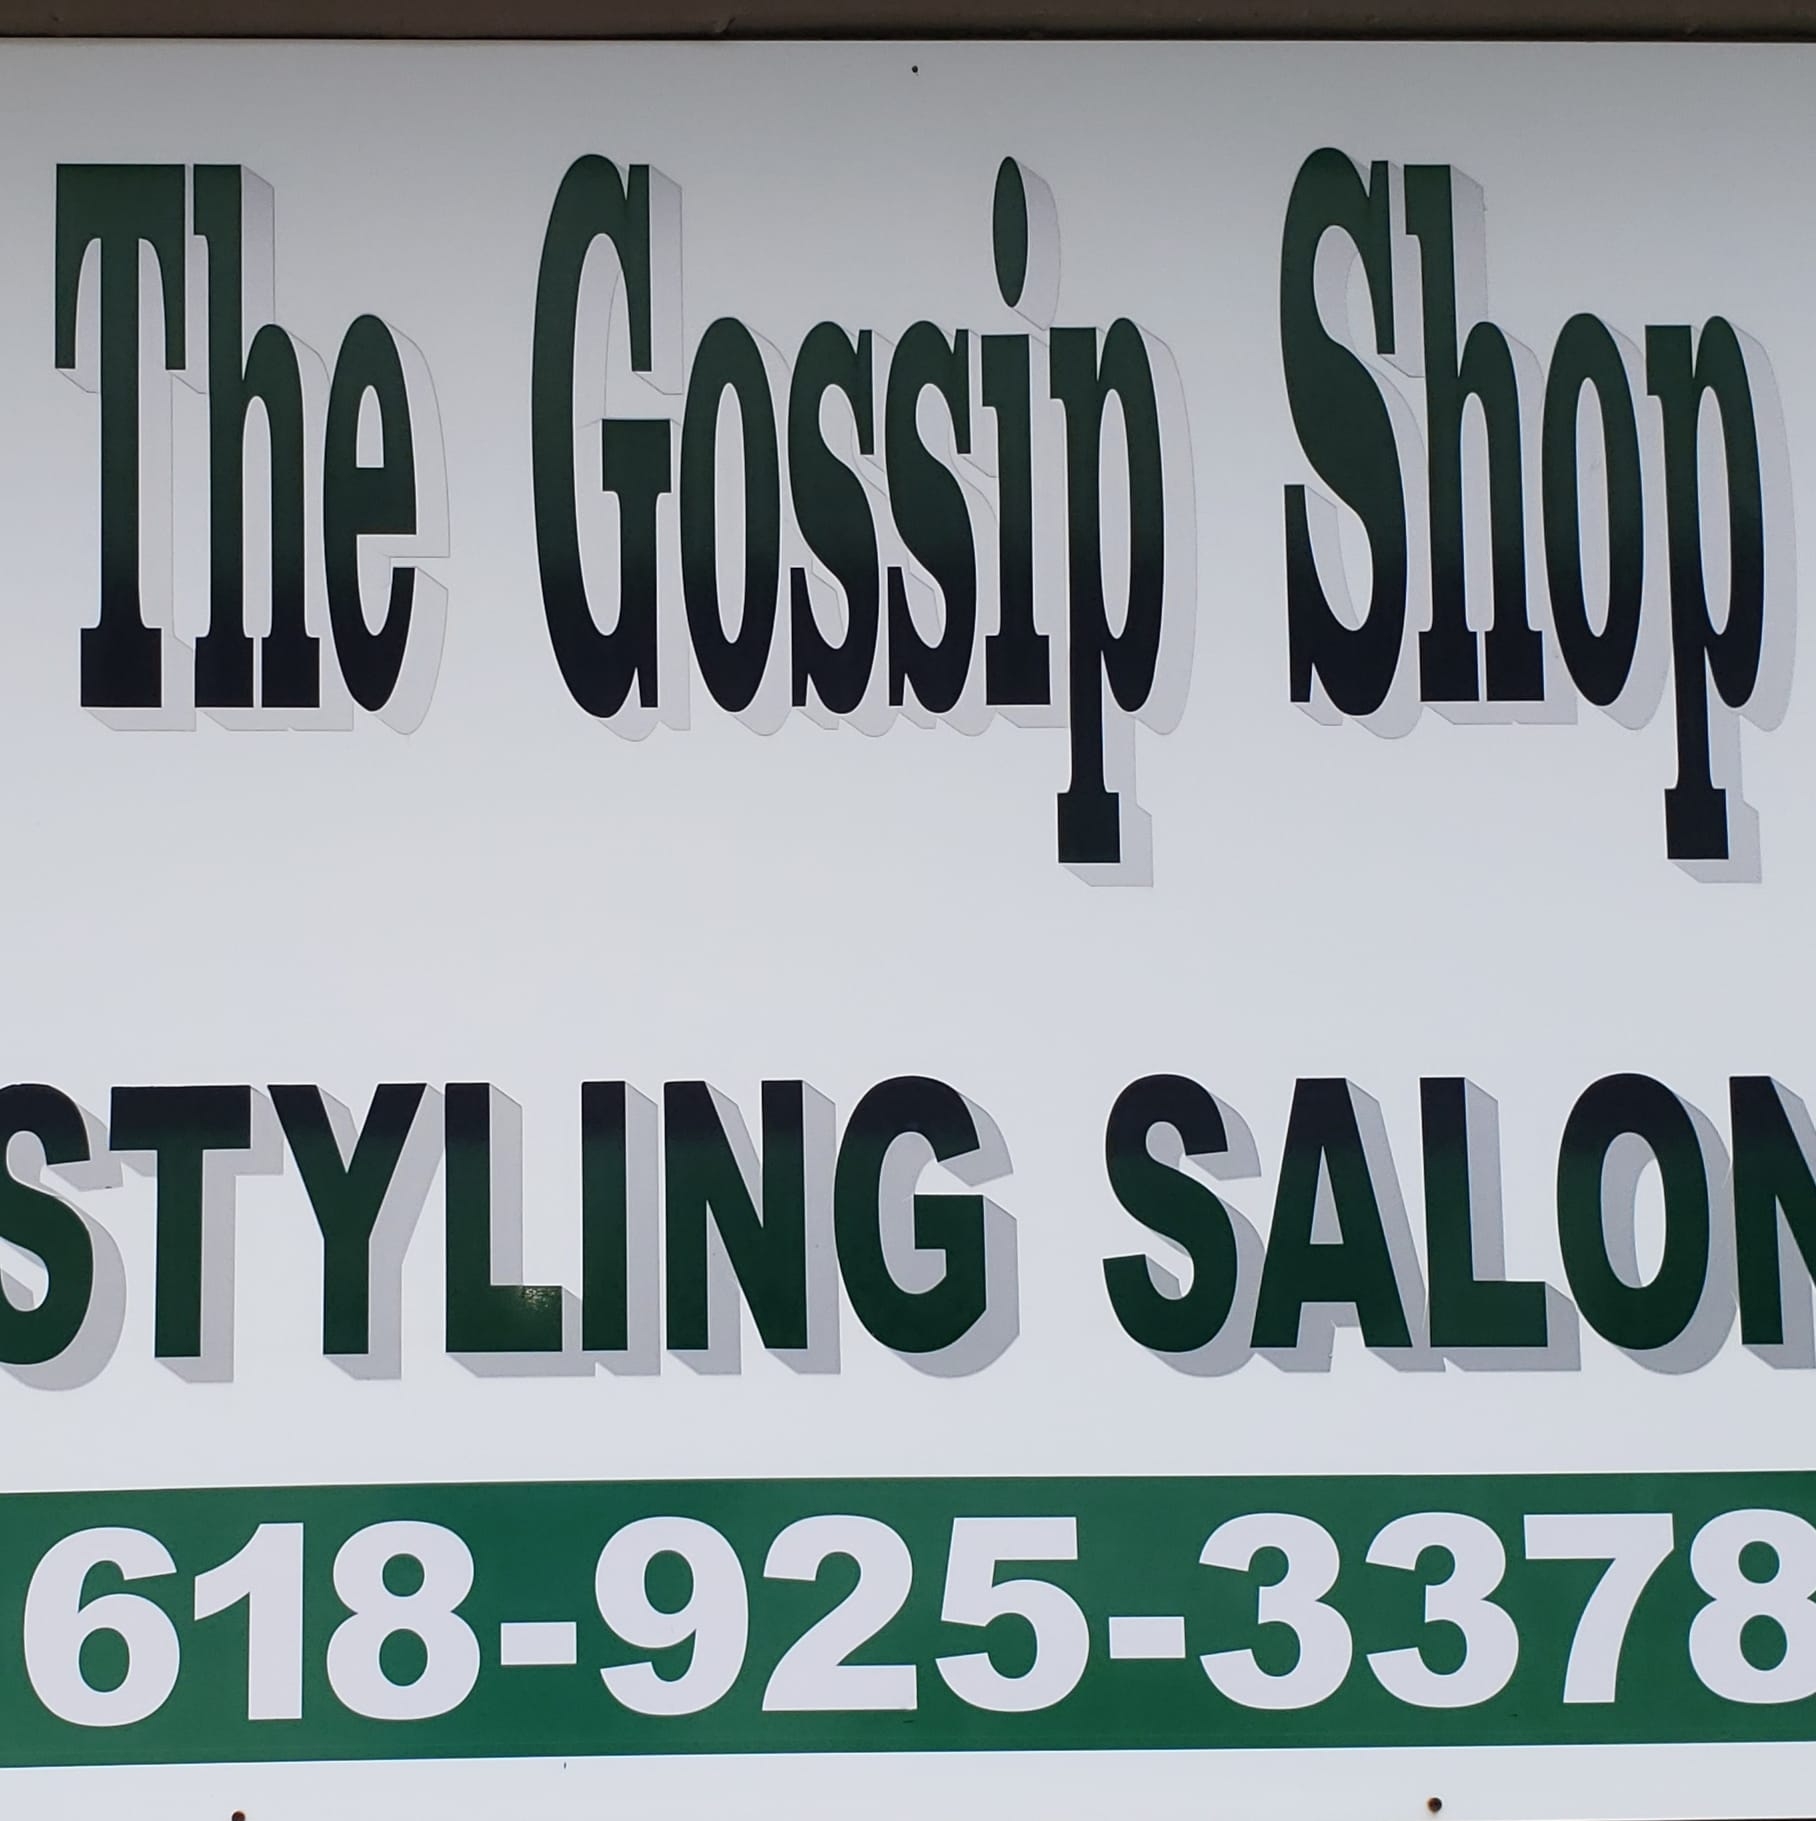 Gossip Shop Beauty Salon Main St, Dahlgren Illinois 62828